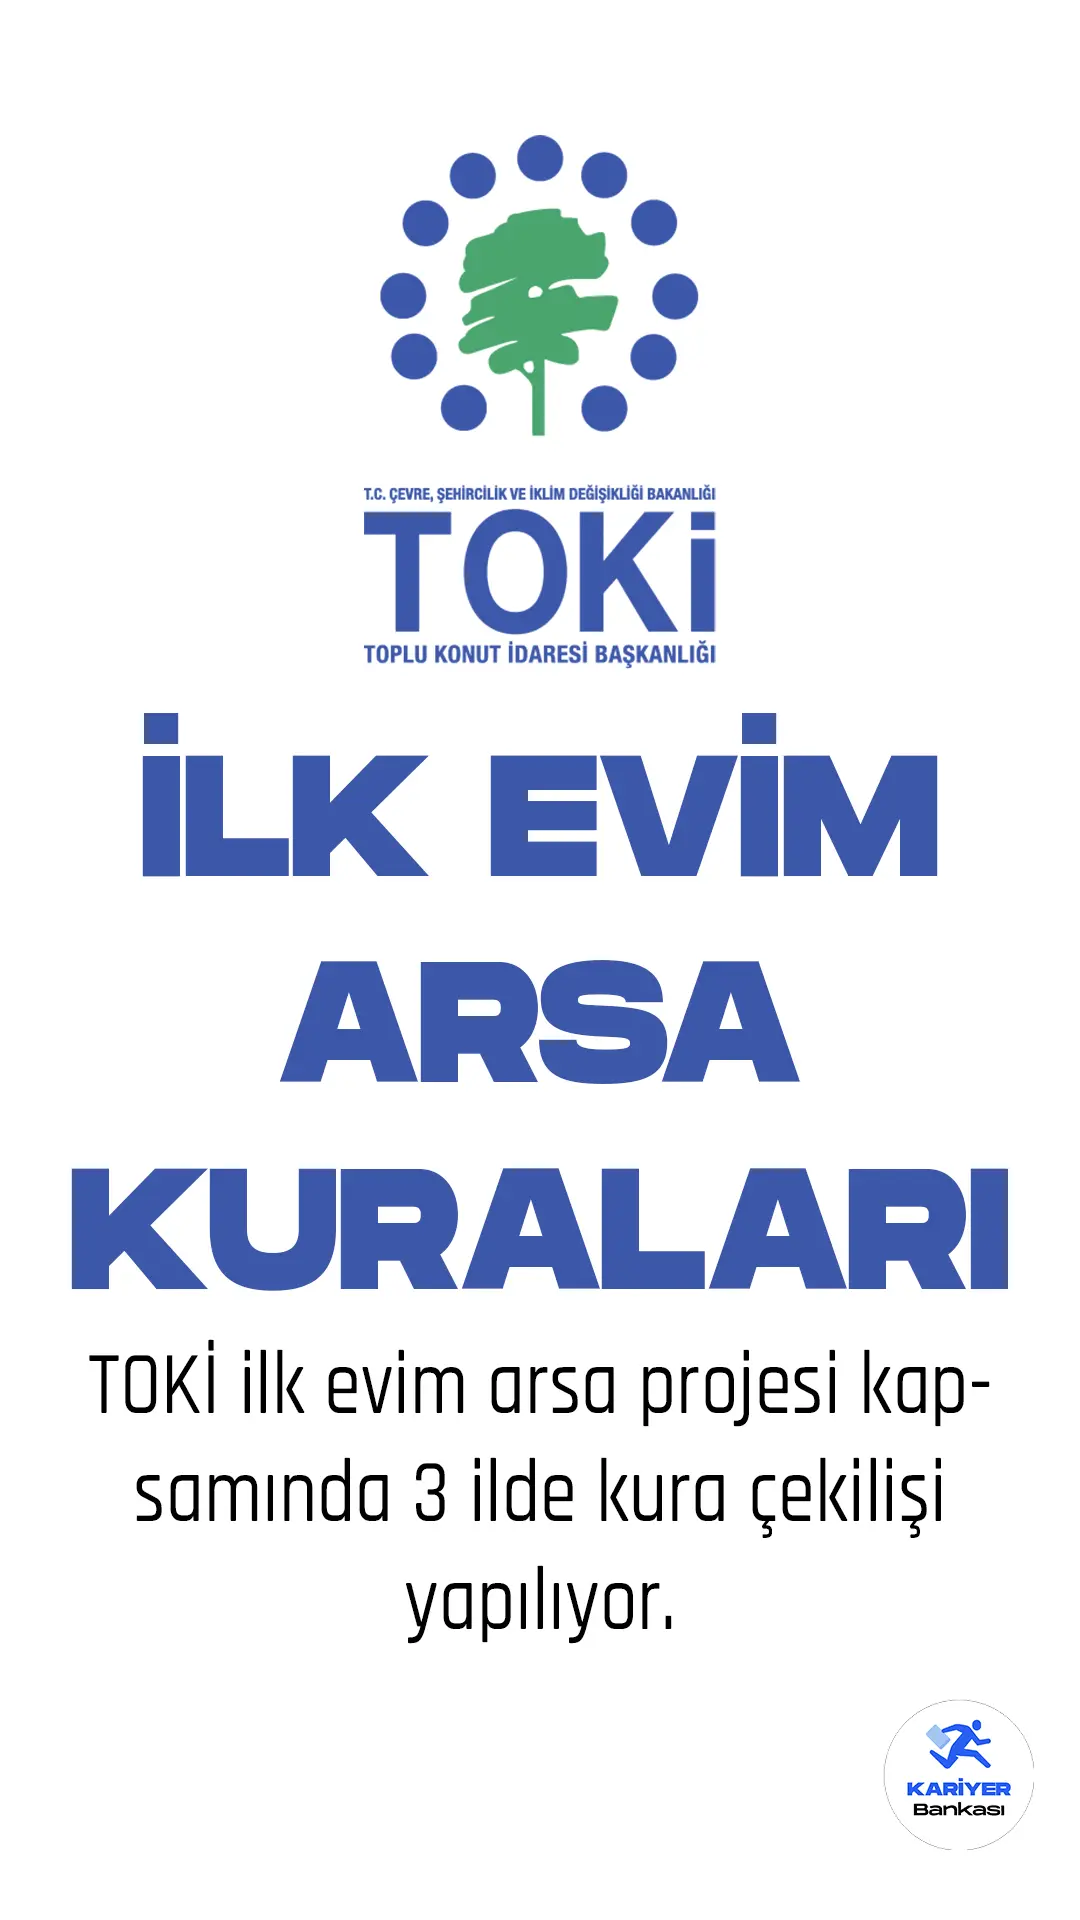 TOKİ İlkevim Arsa Projesinde 11 Nisan tarihi itibariyle Ankara, Şanlıurfa ve Osmaniye'de müstakil arsa kuraları çekiliyor.